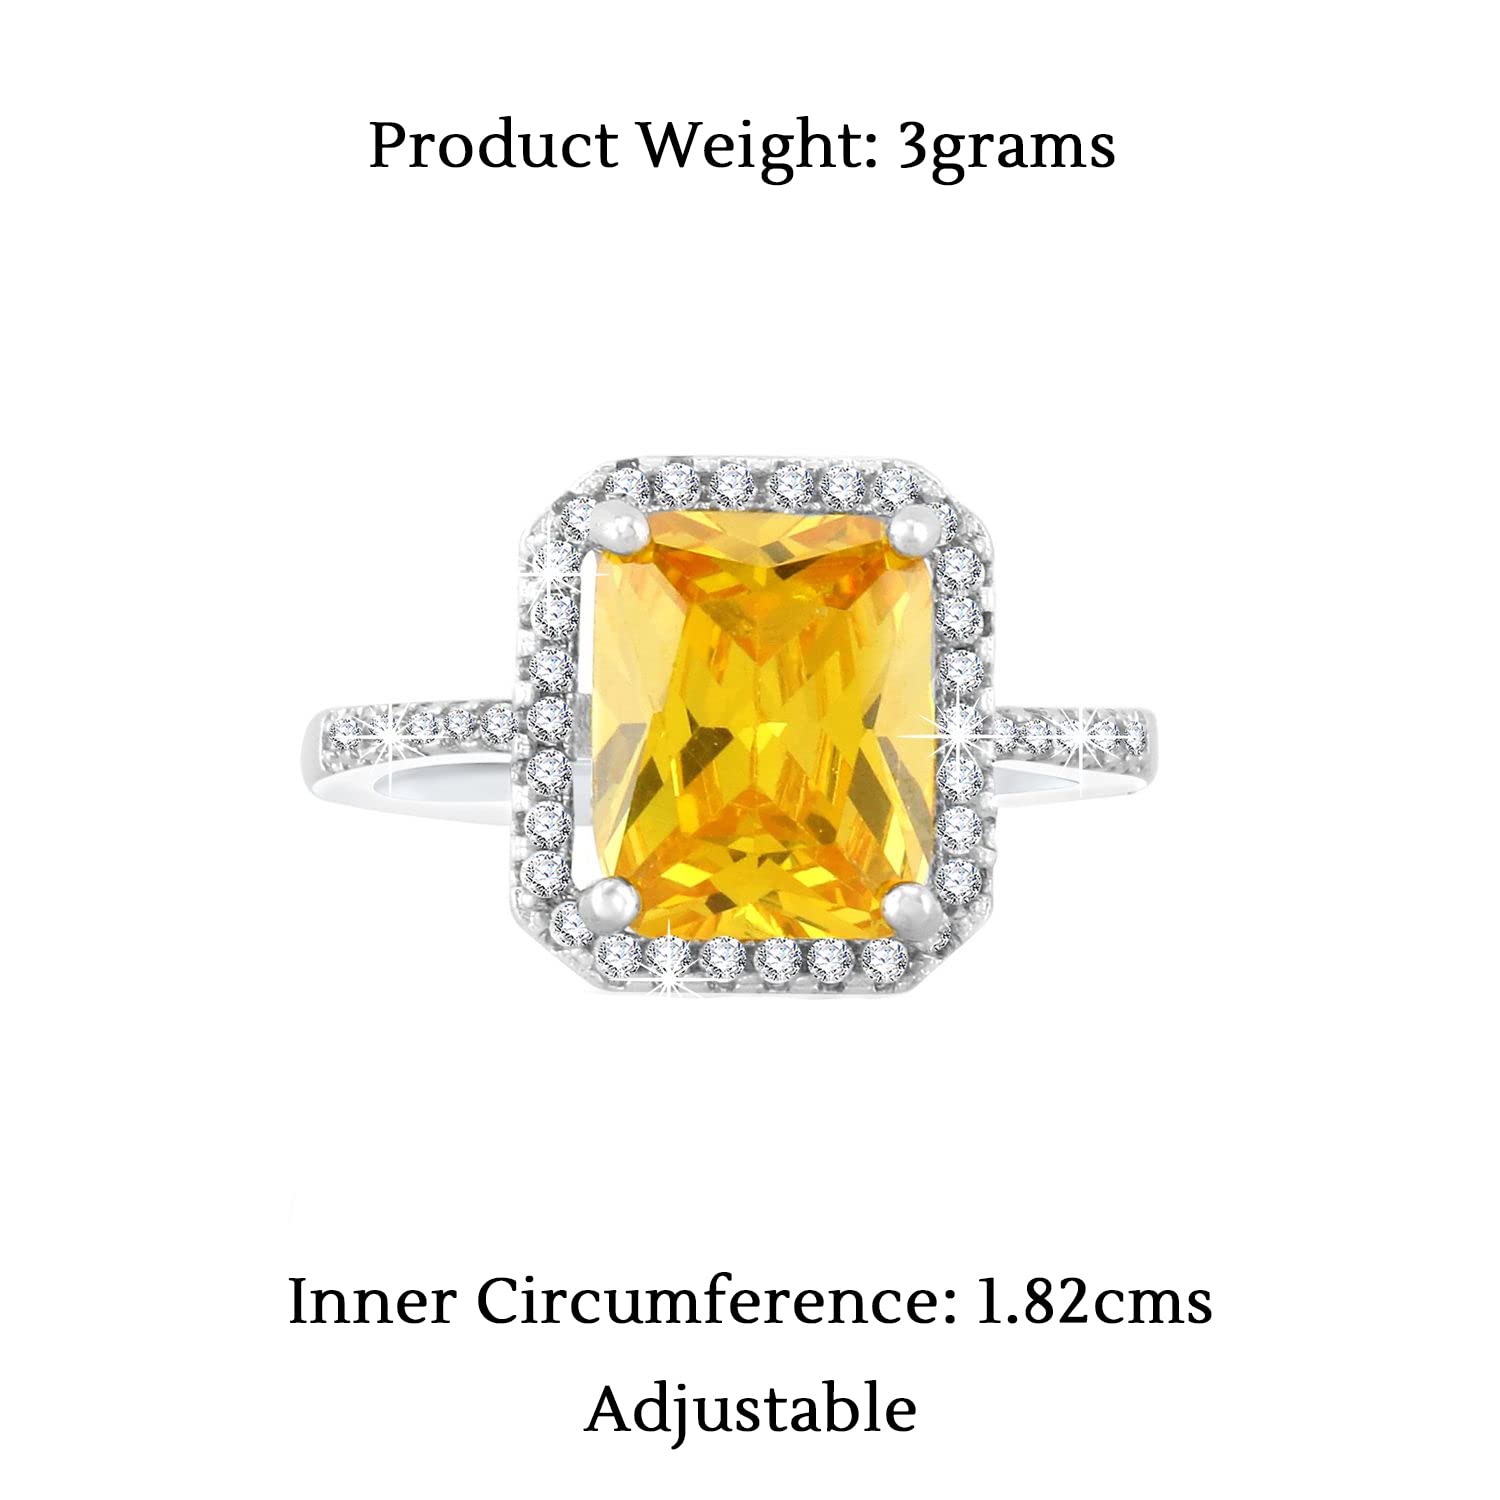 Buy Akshita gems 8.00 Carat Natural Yellow Topaz Gemstone Ring (Sunela  Stone Ring) Lab Certified Adjustable Ring in Panchdhatu for Men and Women,  Sunhela Stone Ring at Amazon.in